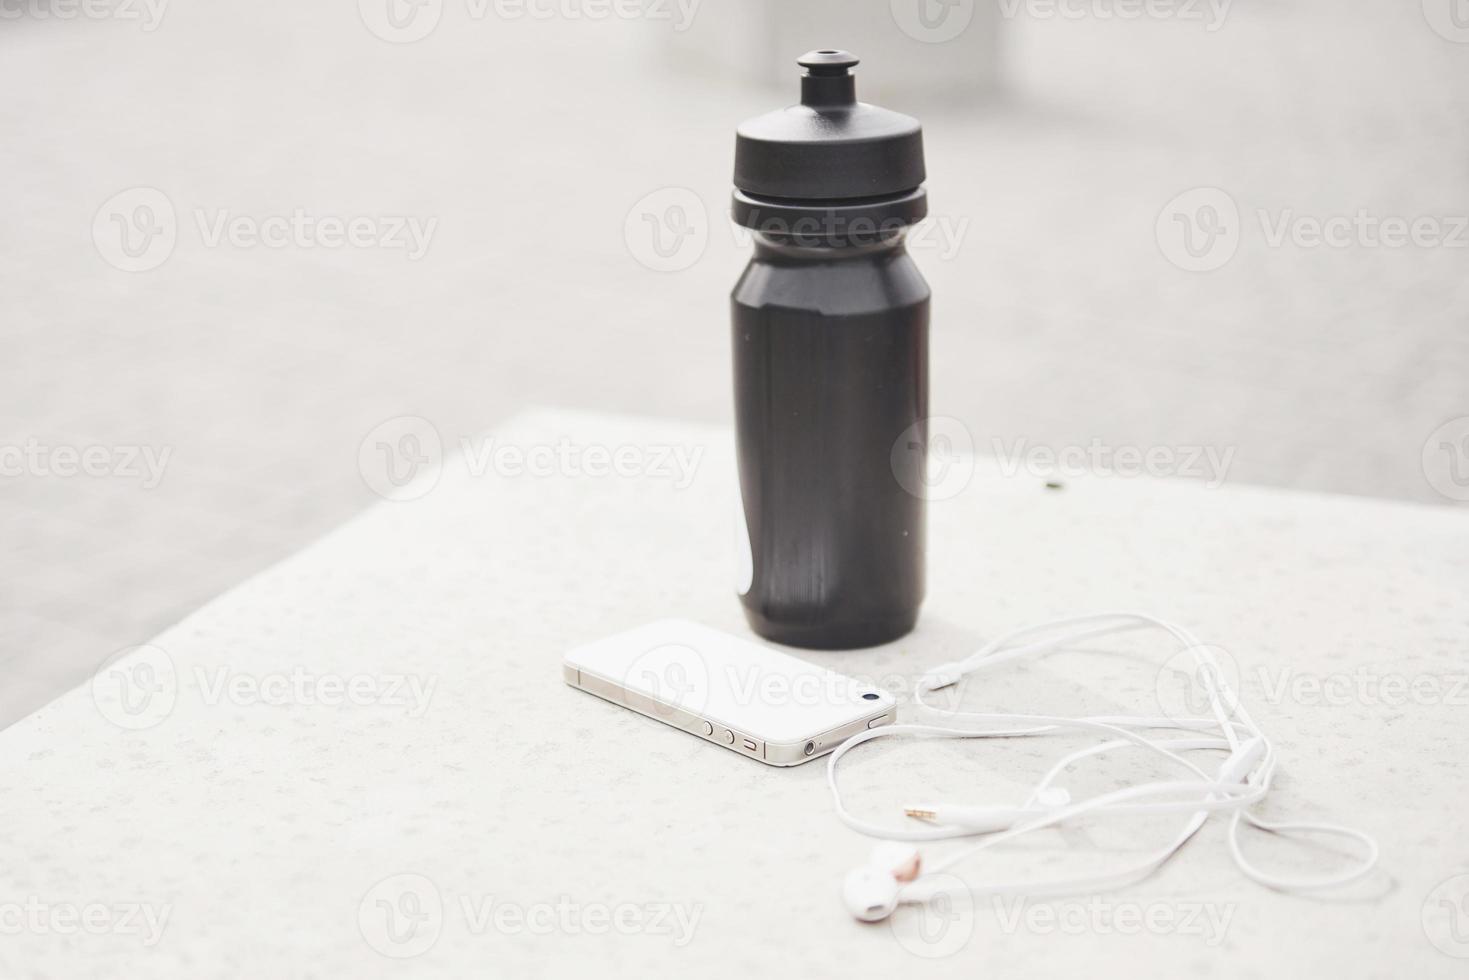 koptelefoon en een fles water in de open lucht. accessoires voor hardloopsporten foto